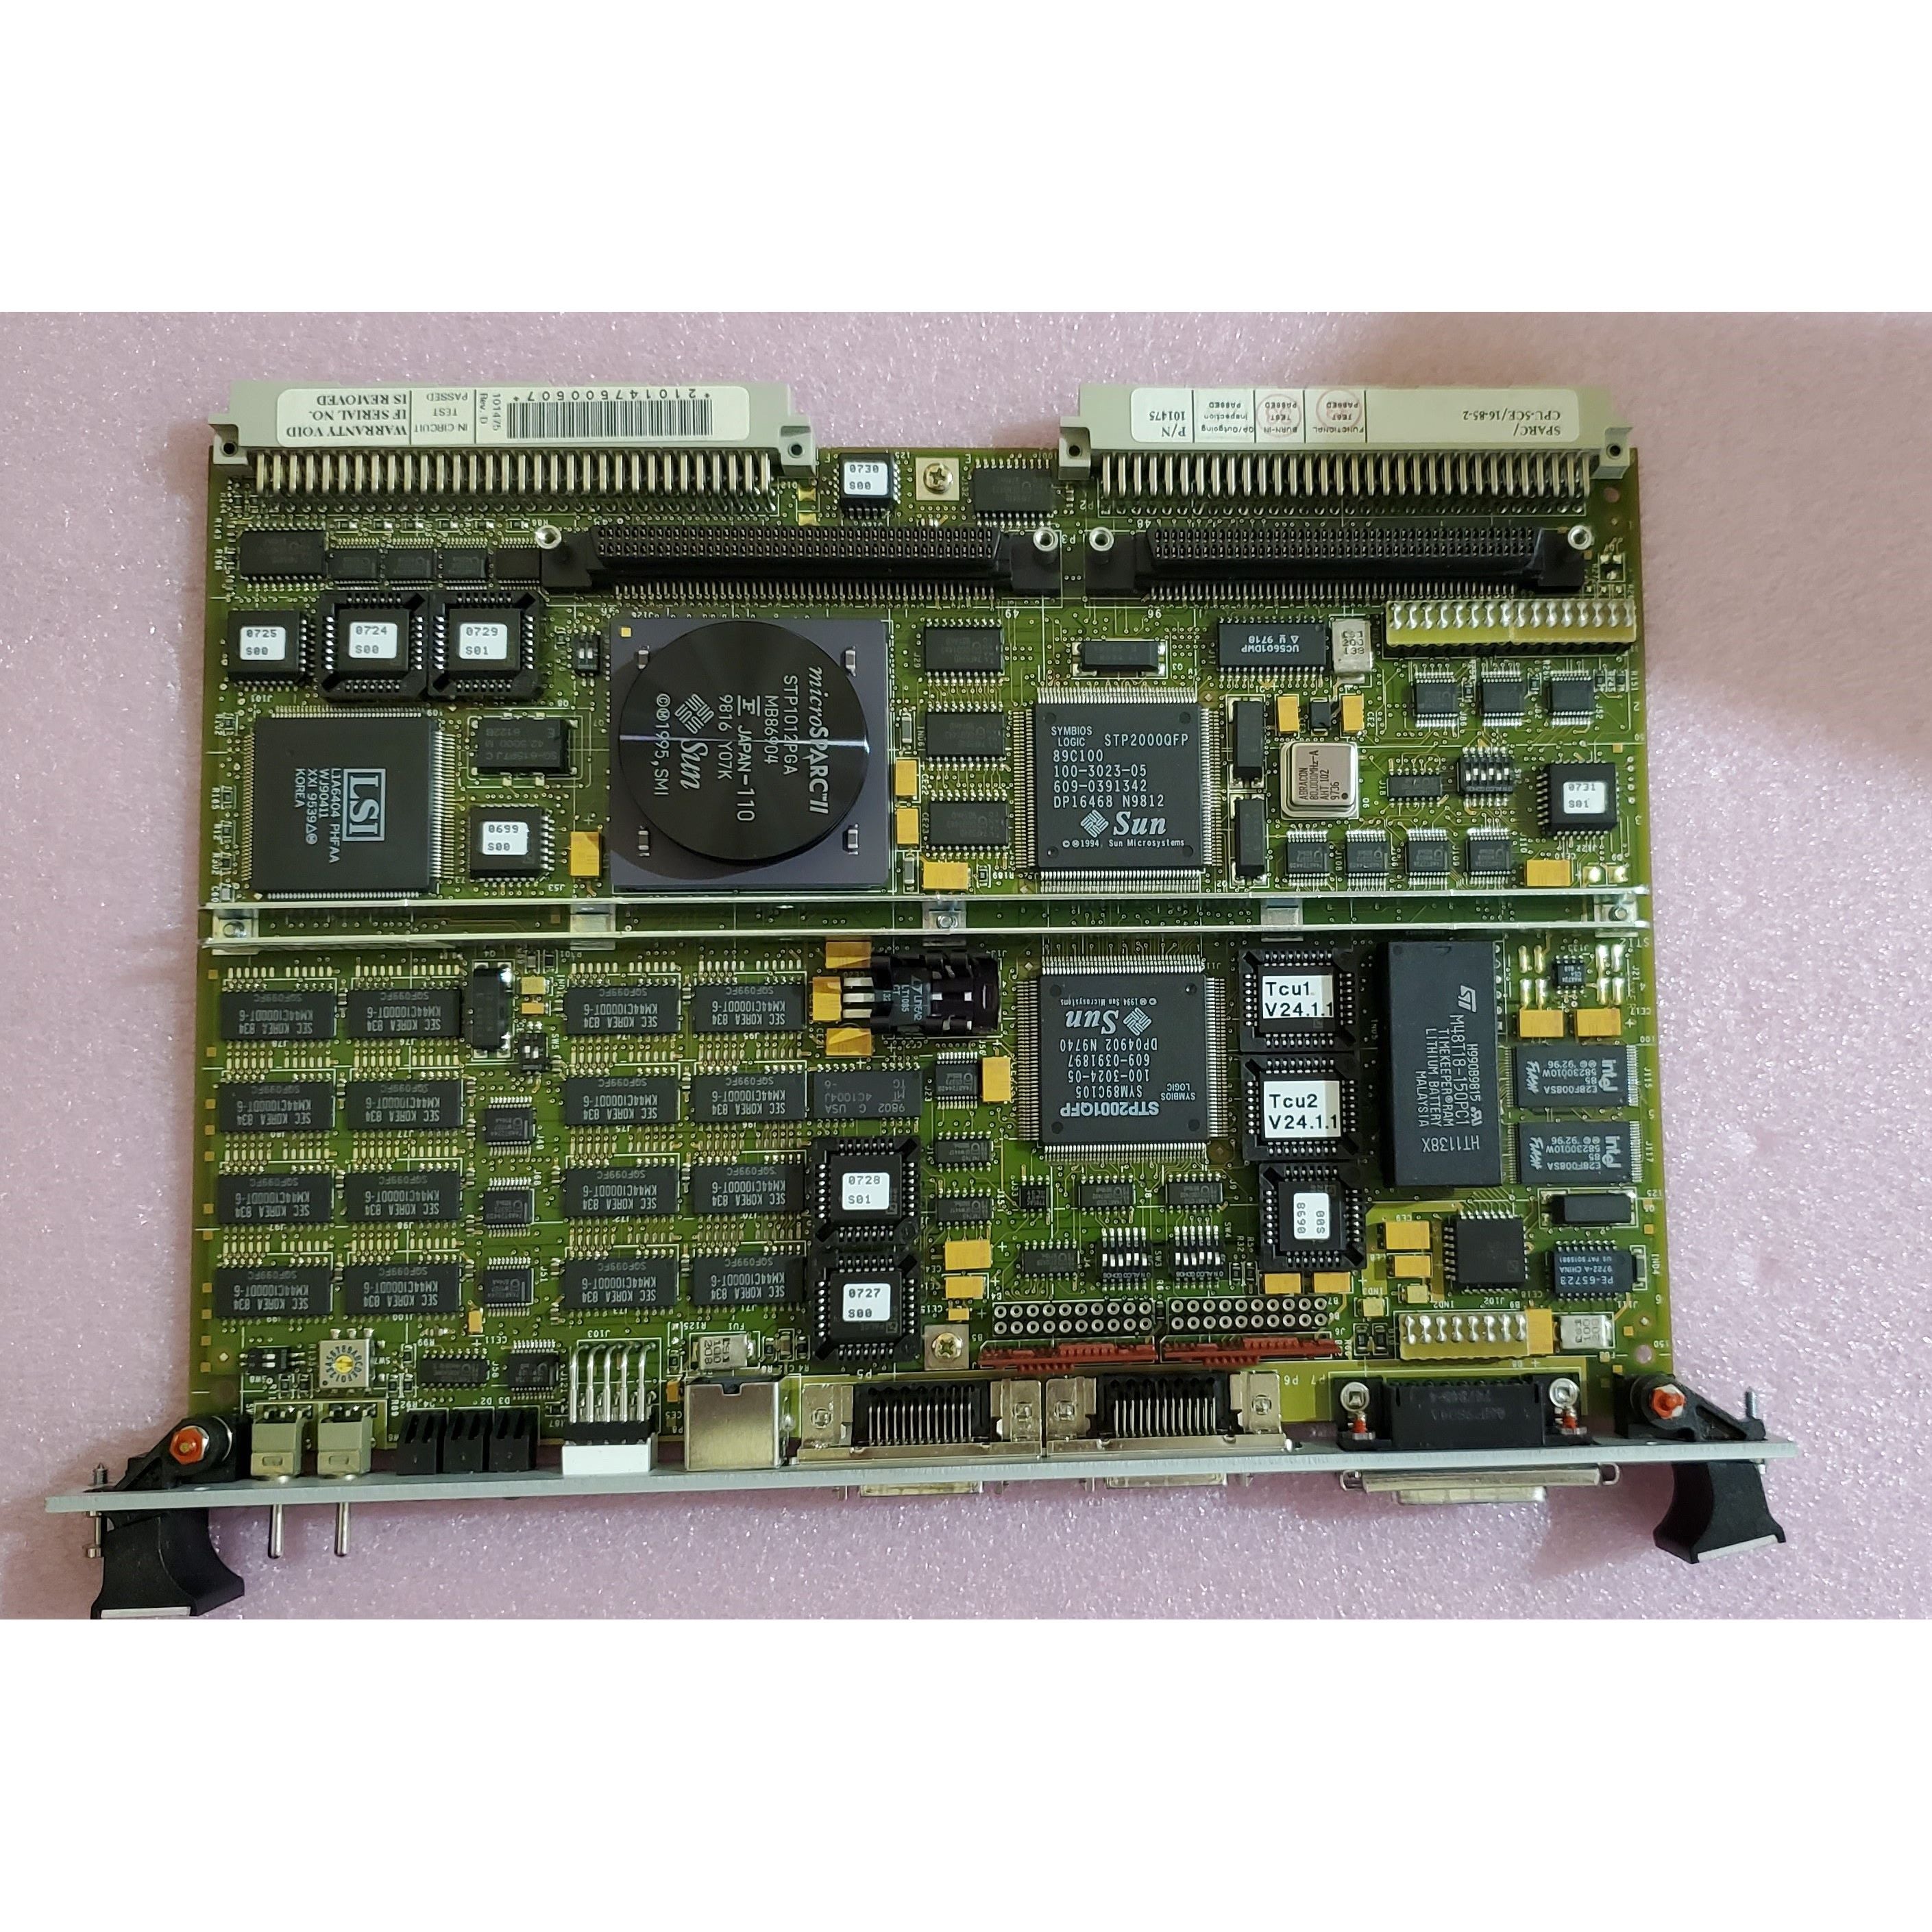 CPU-5CE/16-85-2 | Computer erzwingen